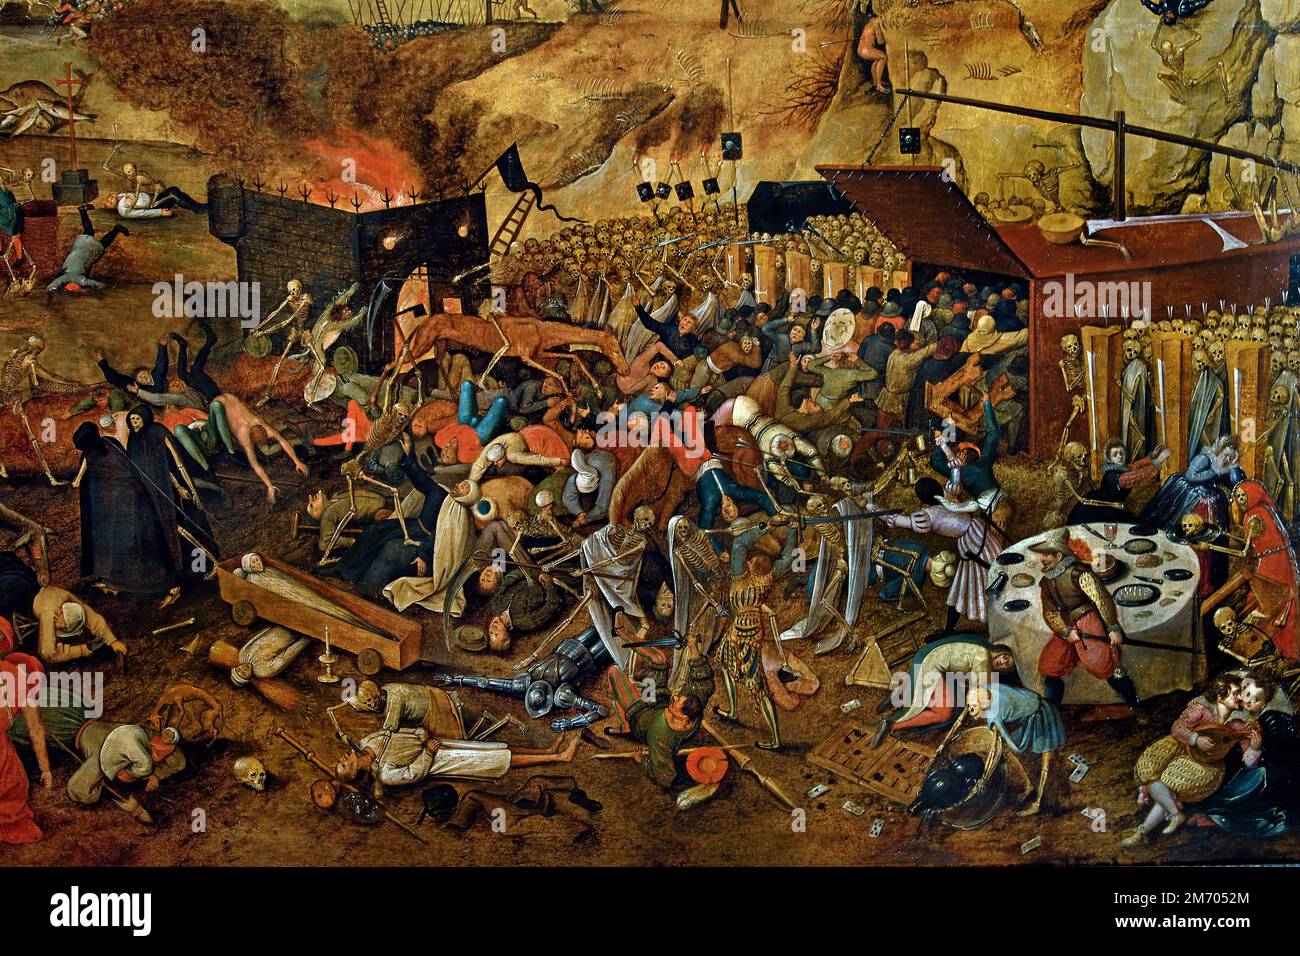 Le triomphe de la mort 1608 à partir de Pieter Bruegel (aussi Brueghel) l'ancien ( 1525-1530 –1569) était l'artiste le plus important de la Renaissance néerlandaise et flamande peintre, Belgique, belge, hollandaise, le, Pays-Bas. Banque D'Images